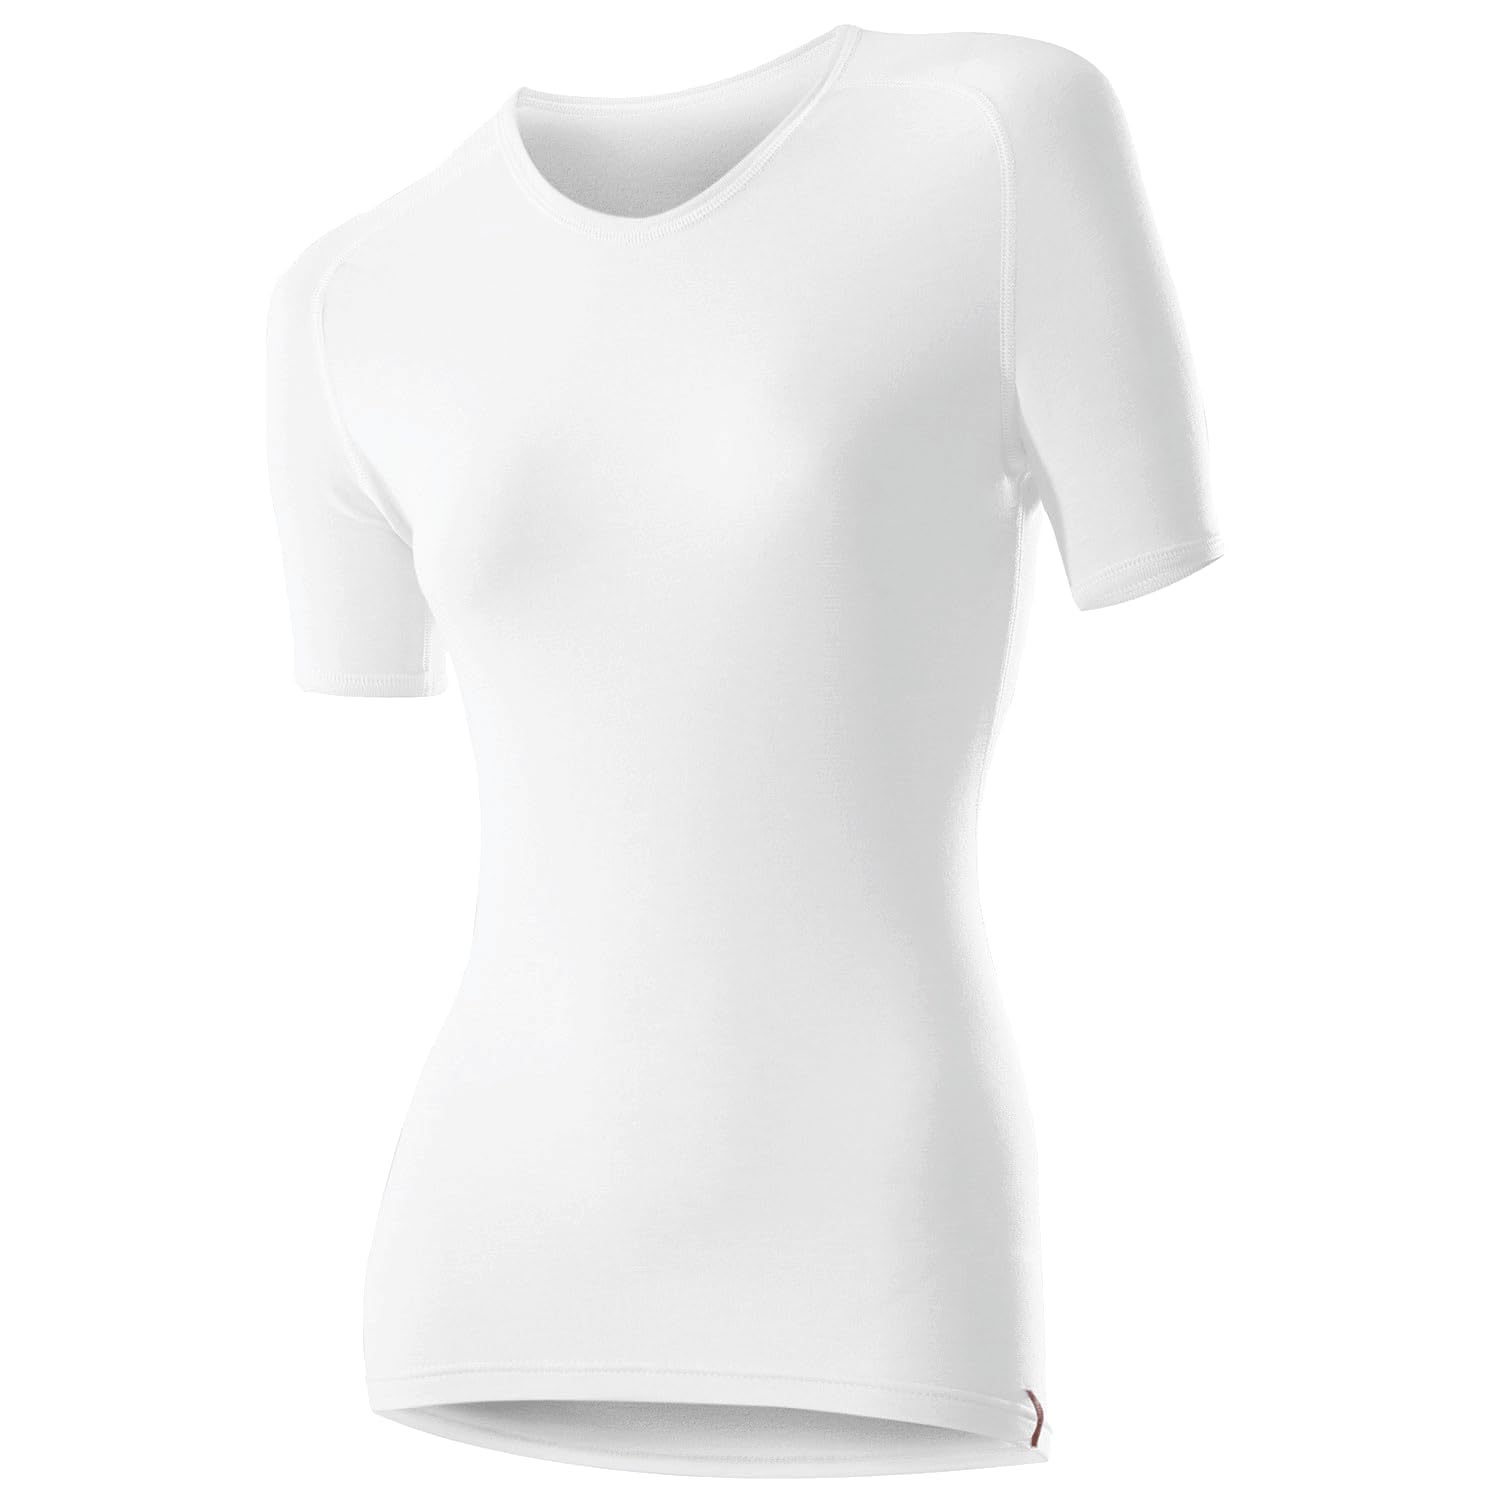 Löffler Damen Unterhemd Shirt Transtex Warm Ka T, weiß, 34